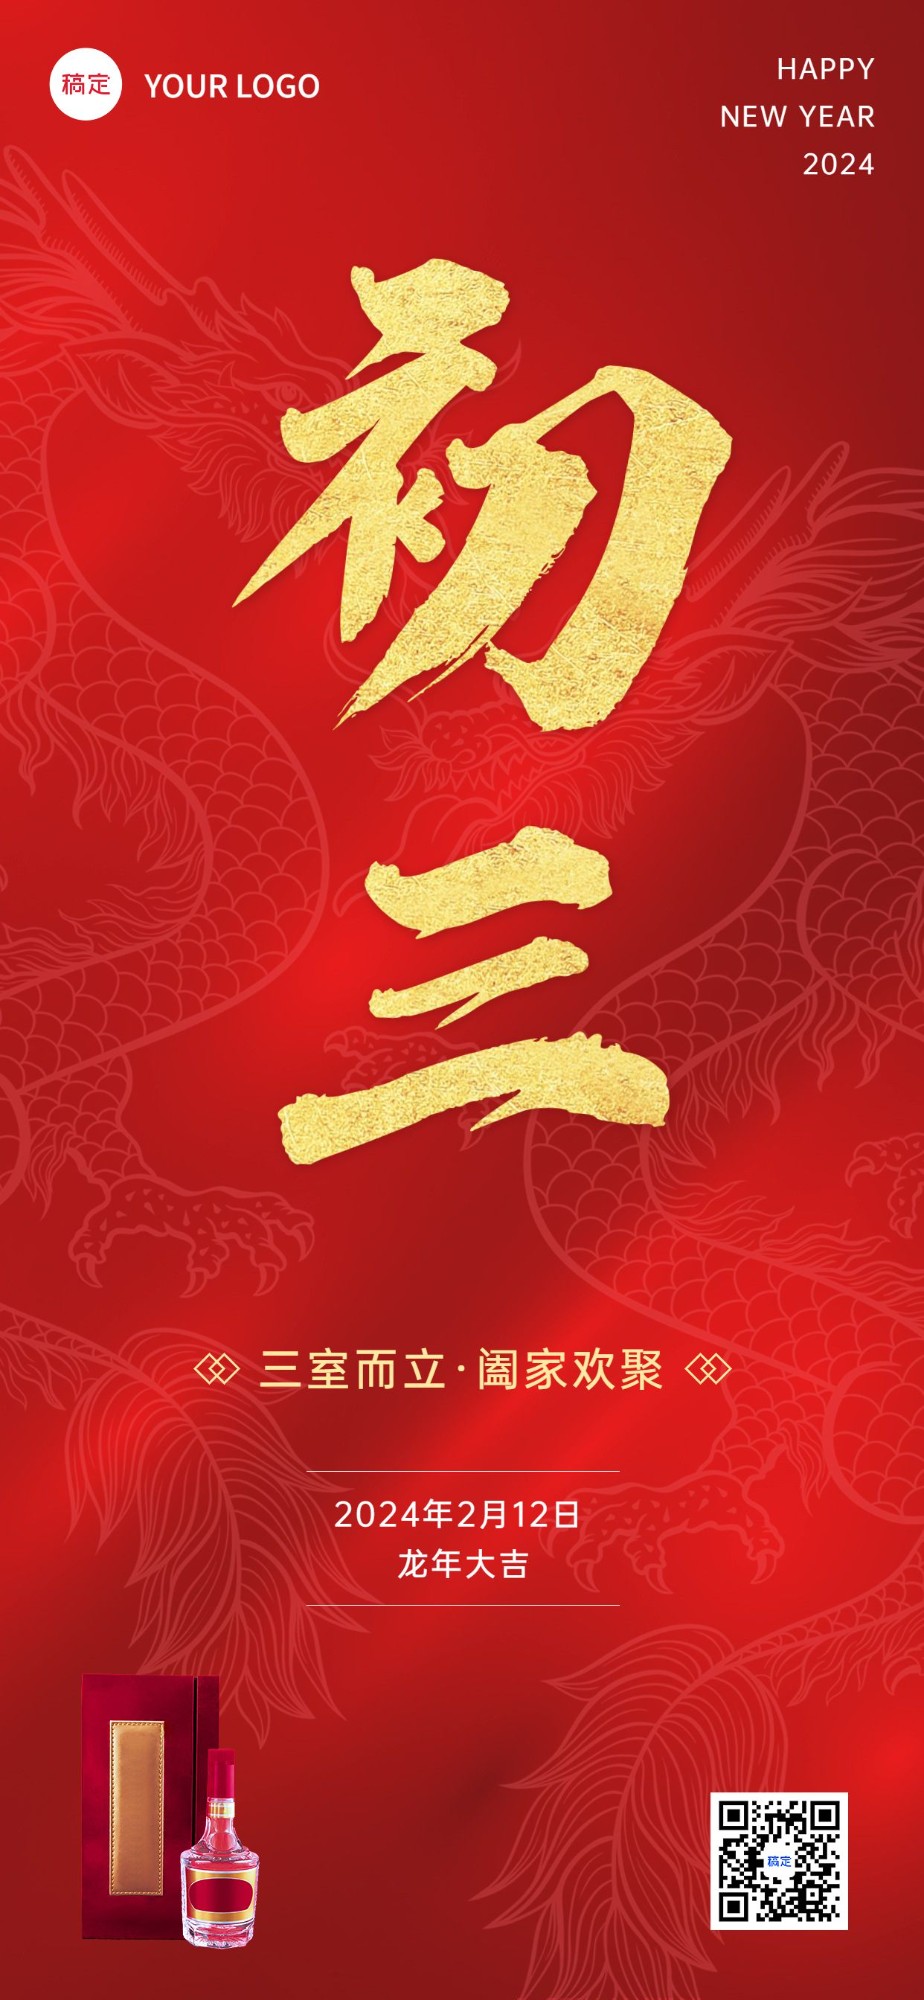 春节龙年初三节日祝福酒产品展示中式喜庆感全屏竖版海报